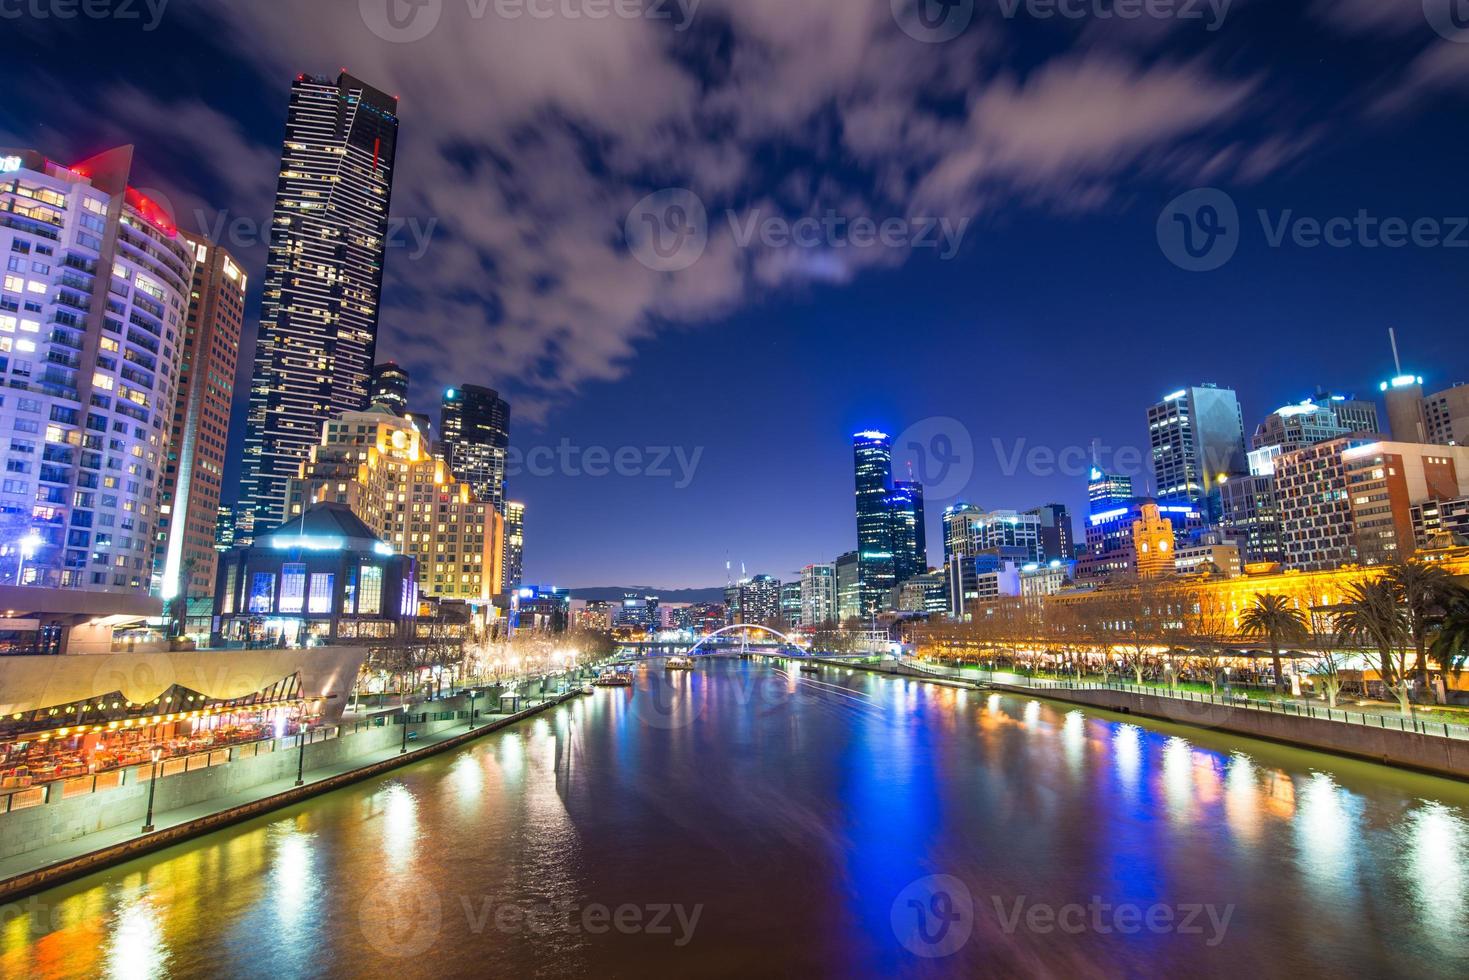 melbourne city världens mest levande stad i Australien i skymningen. foto